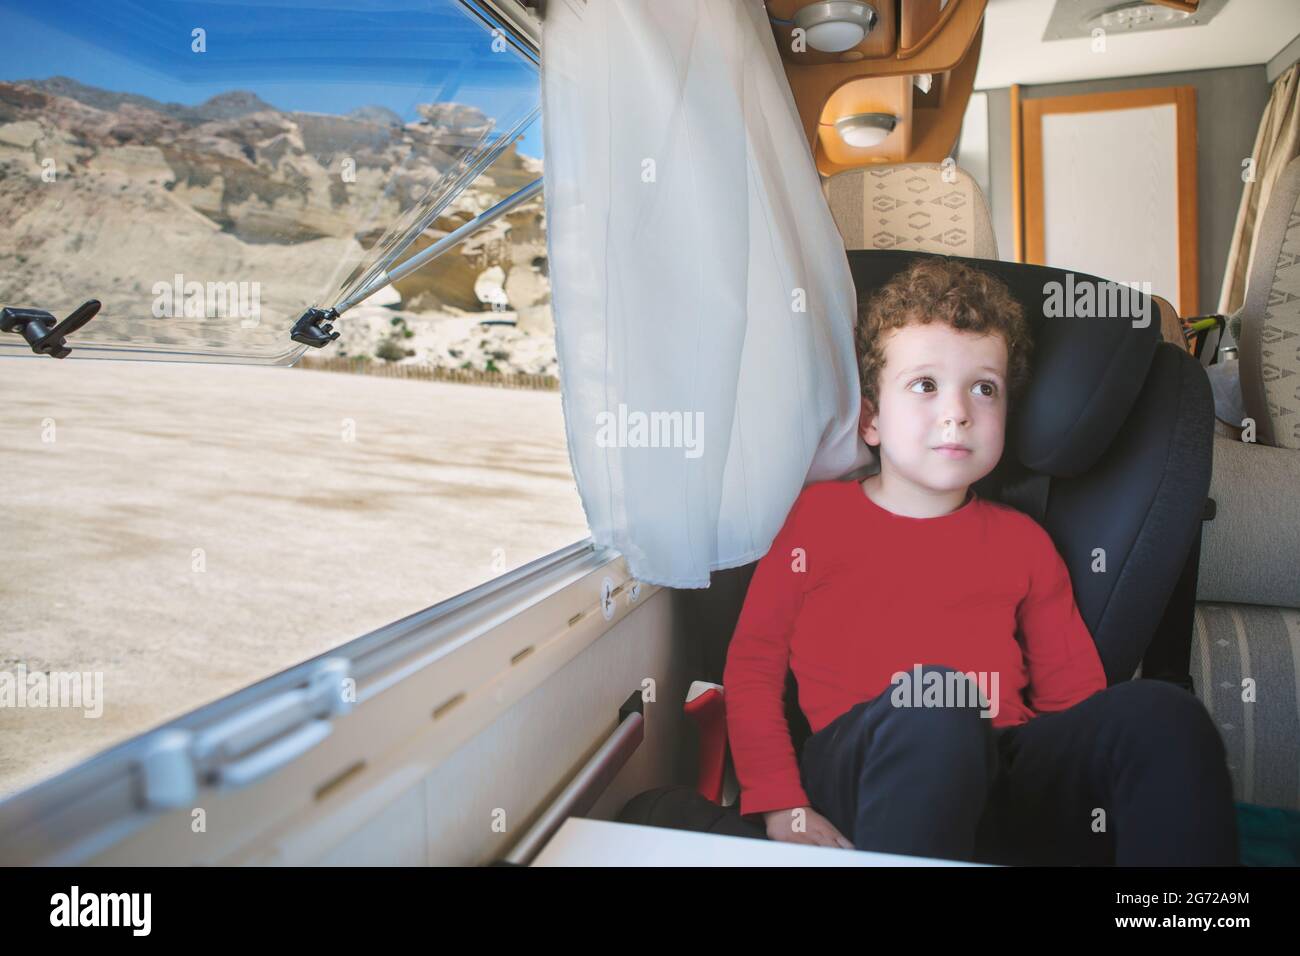 Ein kleiner, lockiger, kaukasisch aussehender Junge, der am offenen Fenster seines geparkten Wohnmobils mit einer spektakulären Aussicht sitzt. Stockfoto